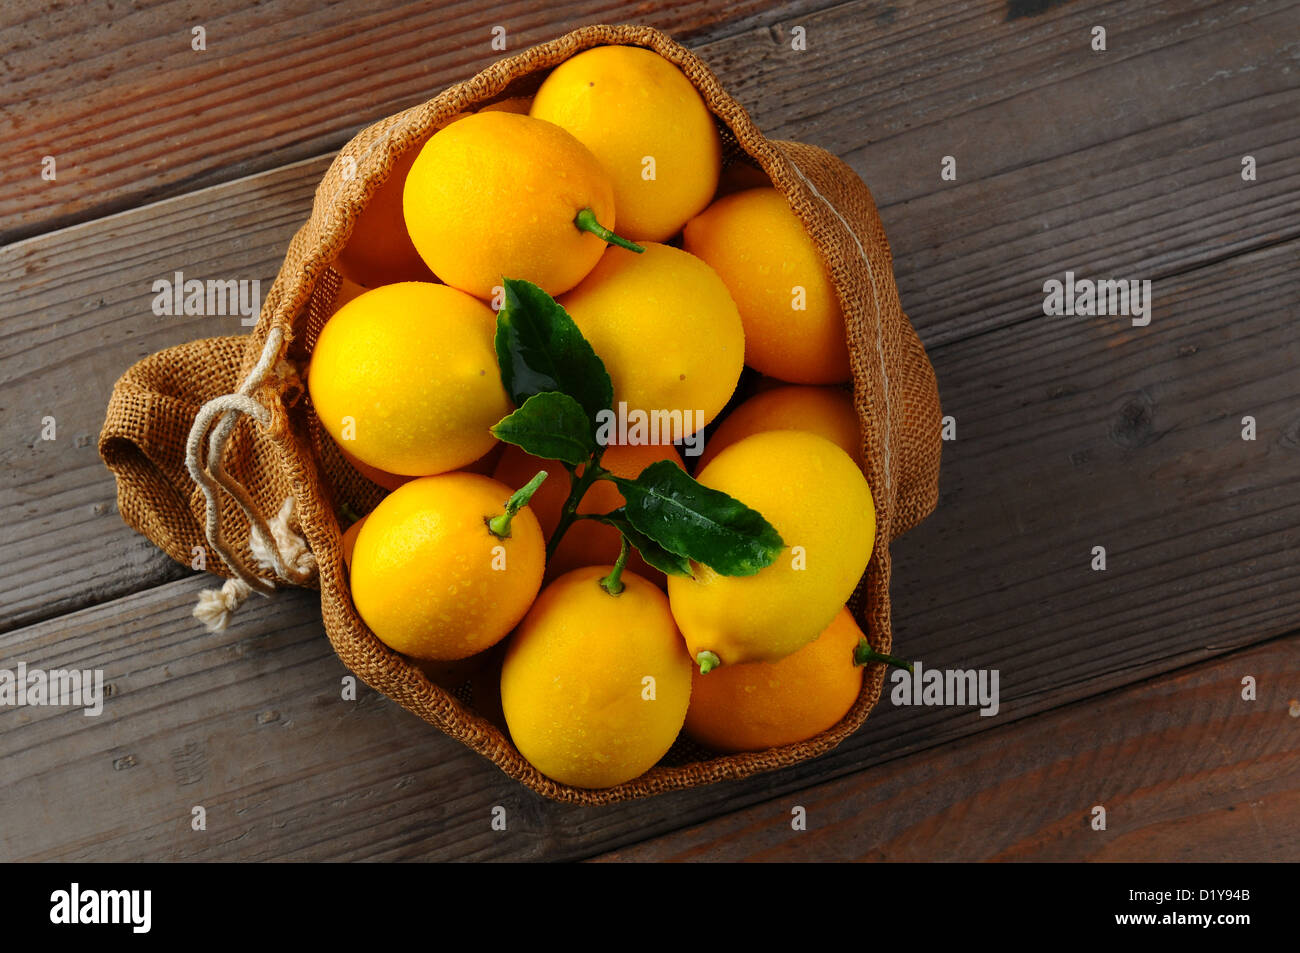 Draufsicht auf einen Leinensack gefüllt mit frisch gepflückten Zitronen auf einem rustikalen Holz Hintergrund. Querformat mit Textfreiraum. Stockfoto